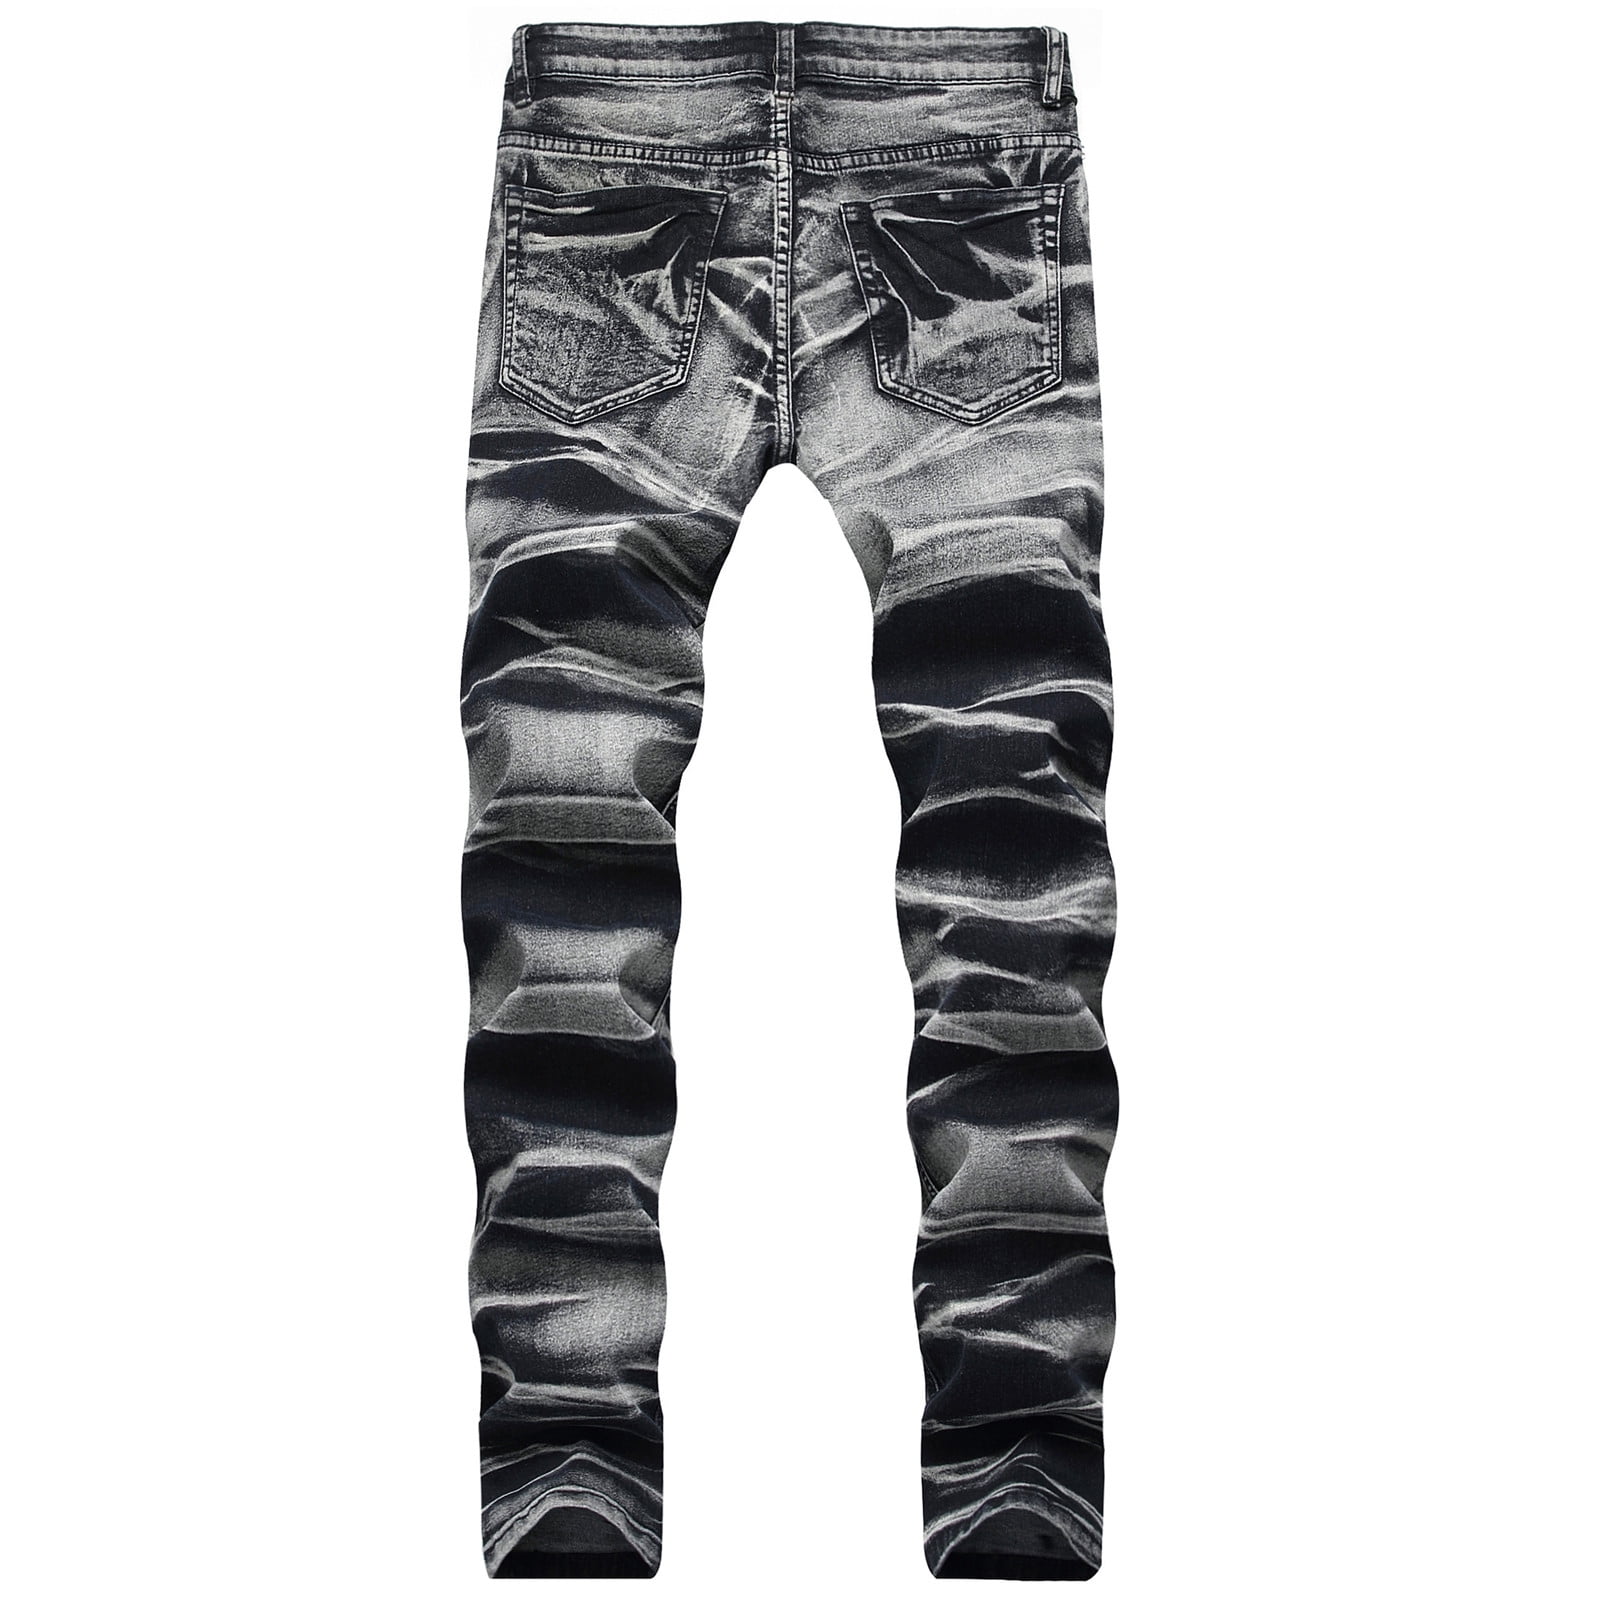 Pimfylm Bell Bottom Jeans For Men Straight Leg Jeans For Men Grey Large ...